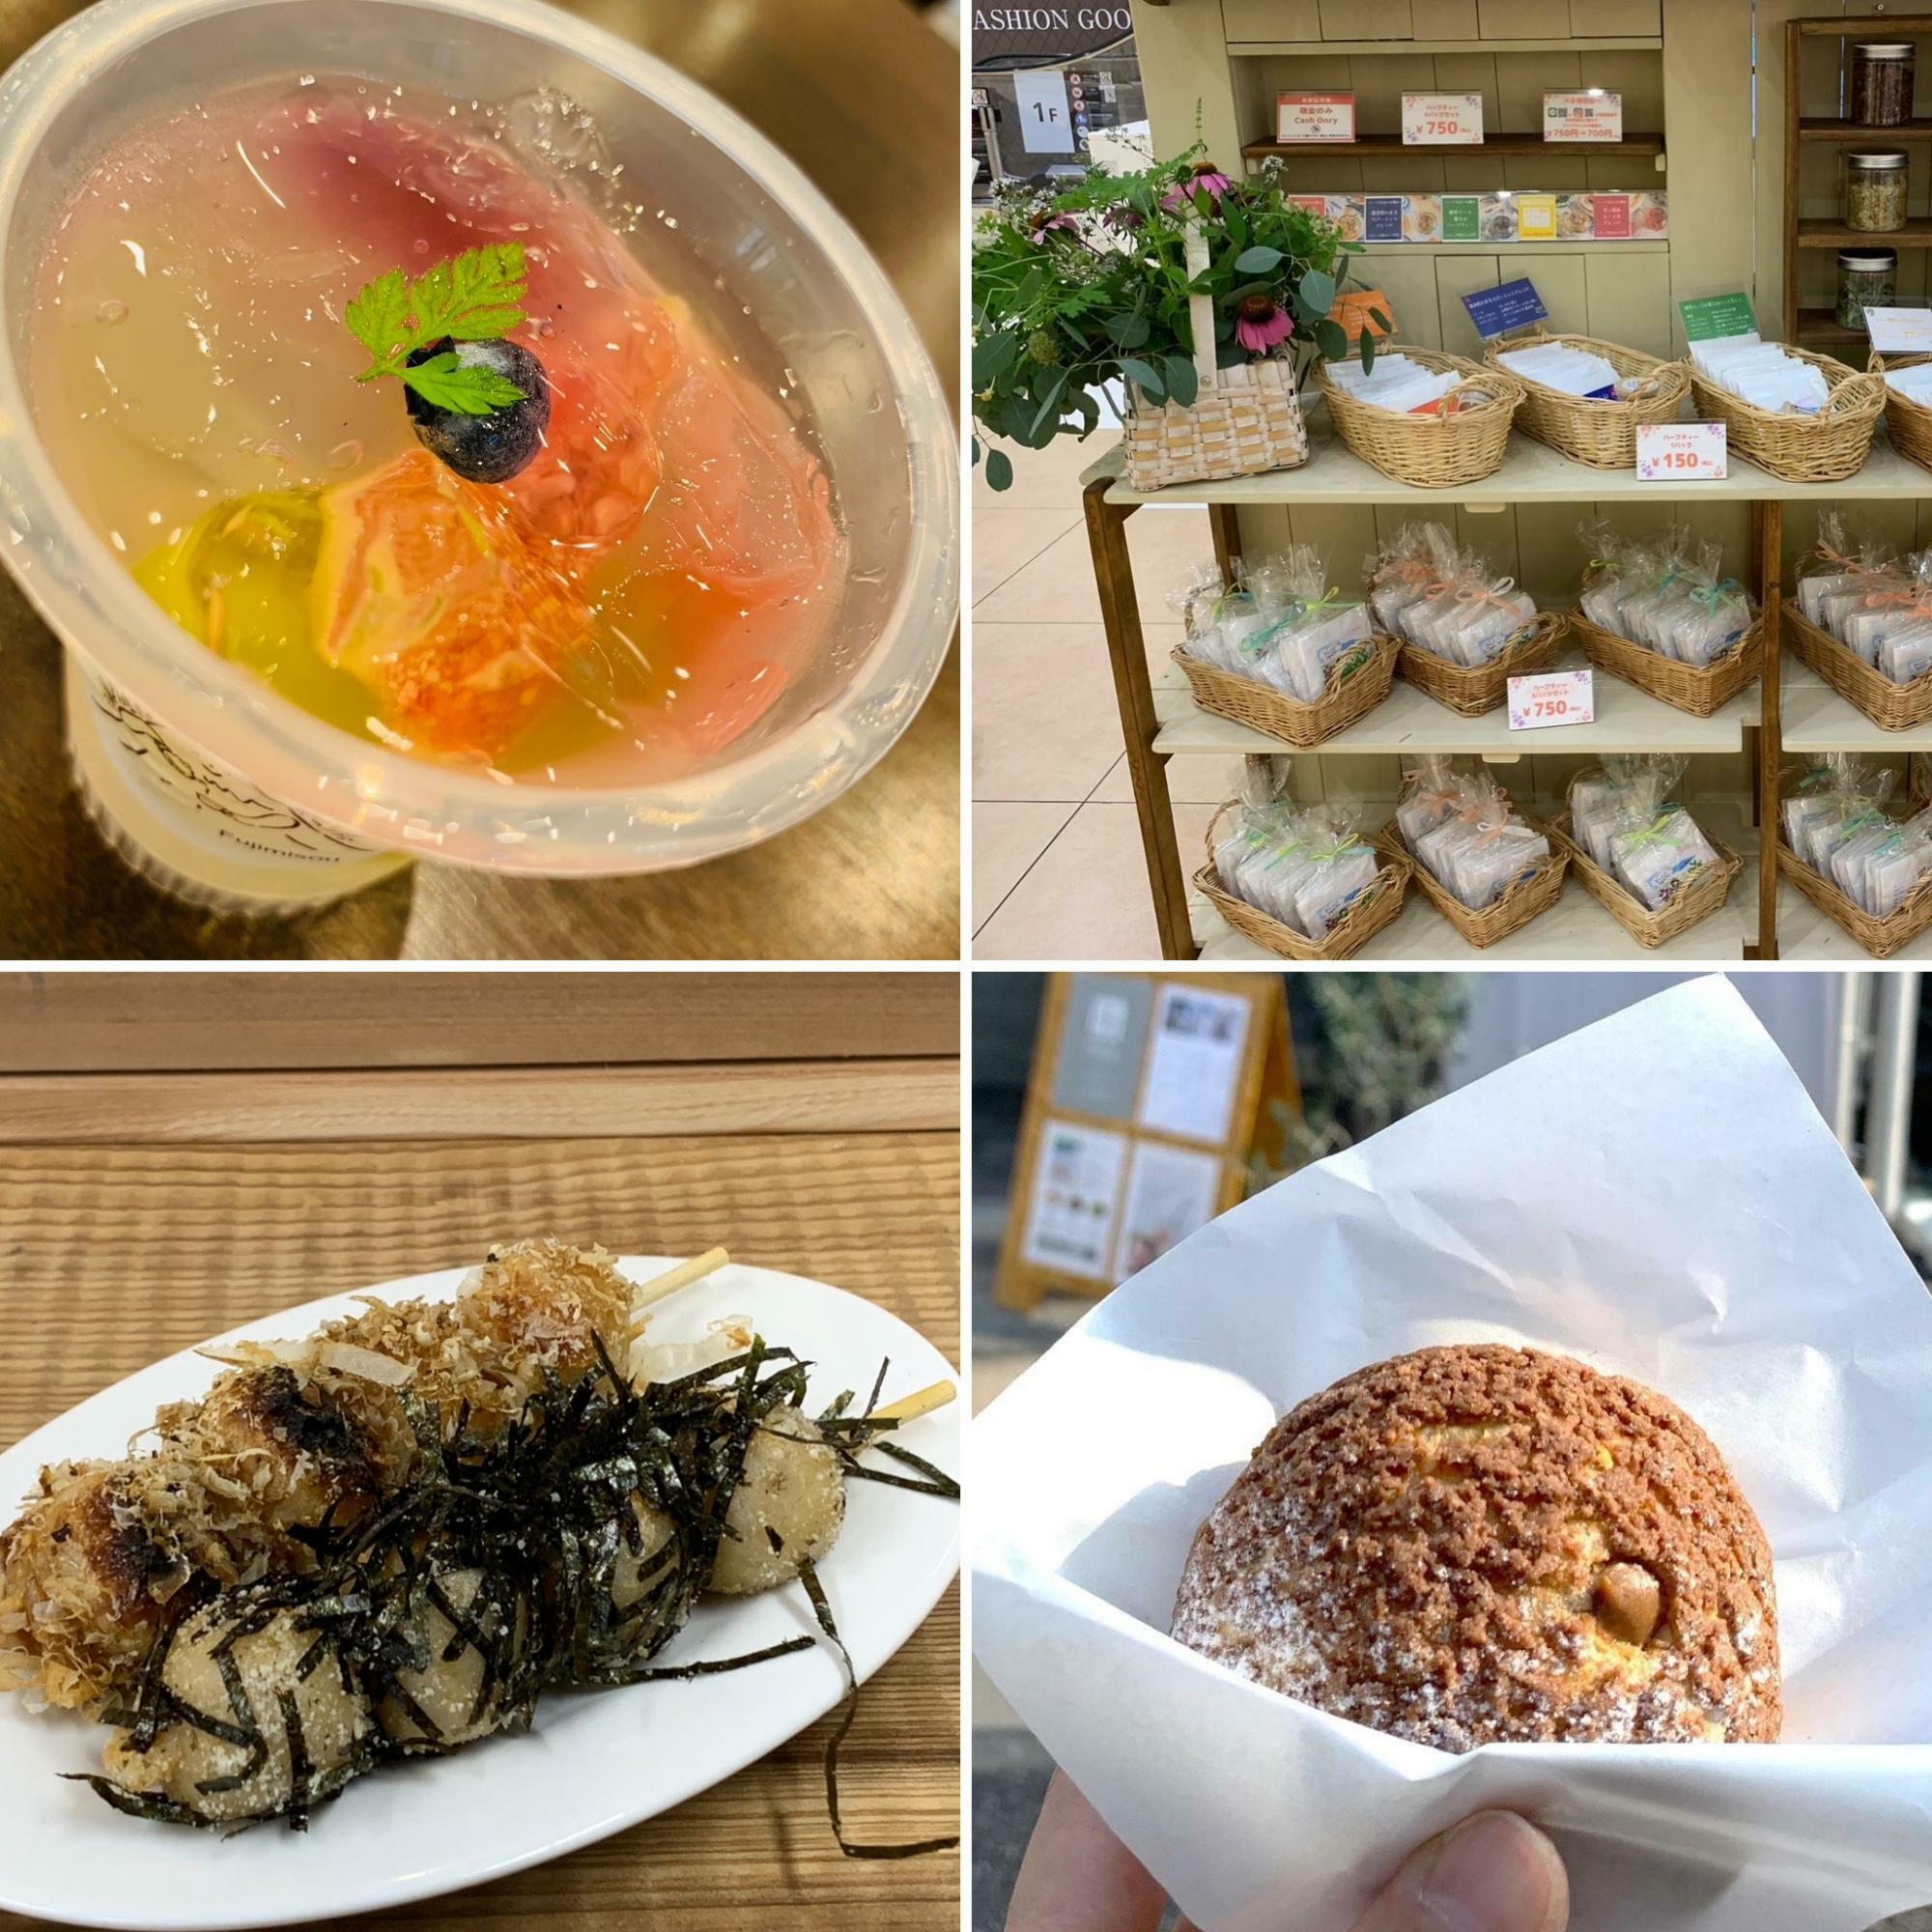 左上から富士見荘さんのハーブゼリー、ハーブロールさん、柚野商店の玄米だんご、モウデルコーヒーさんのシュークリーム